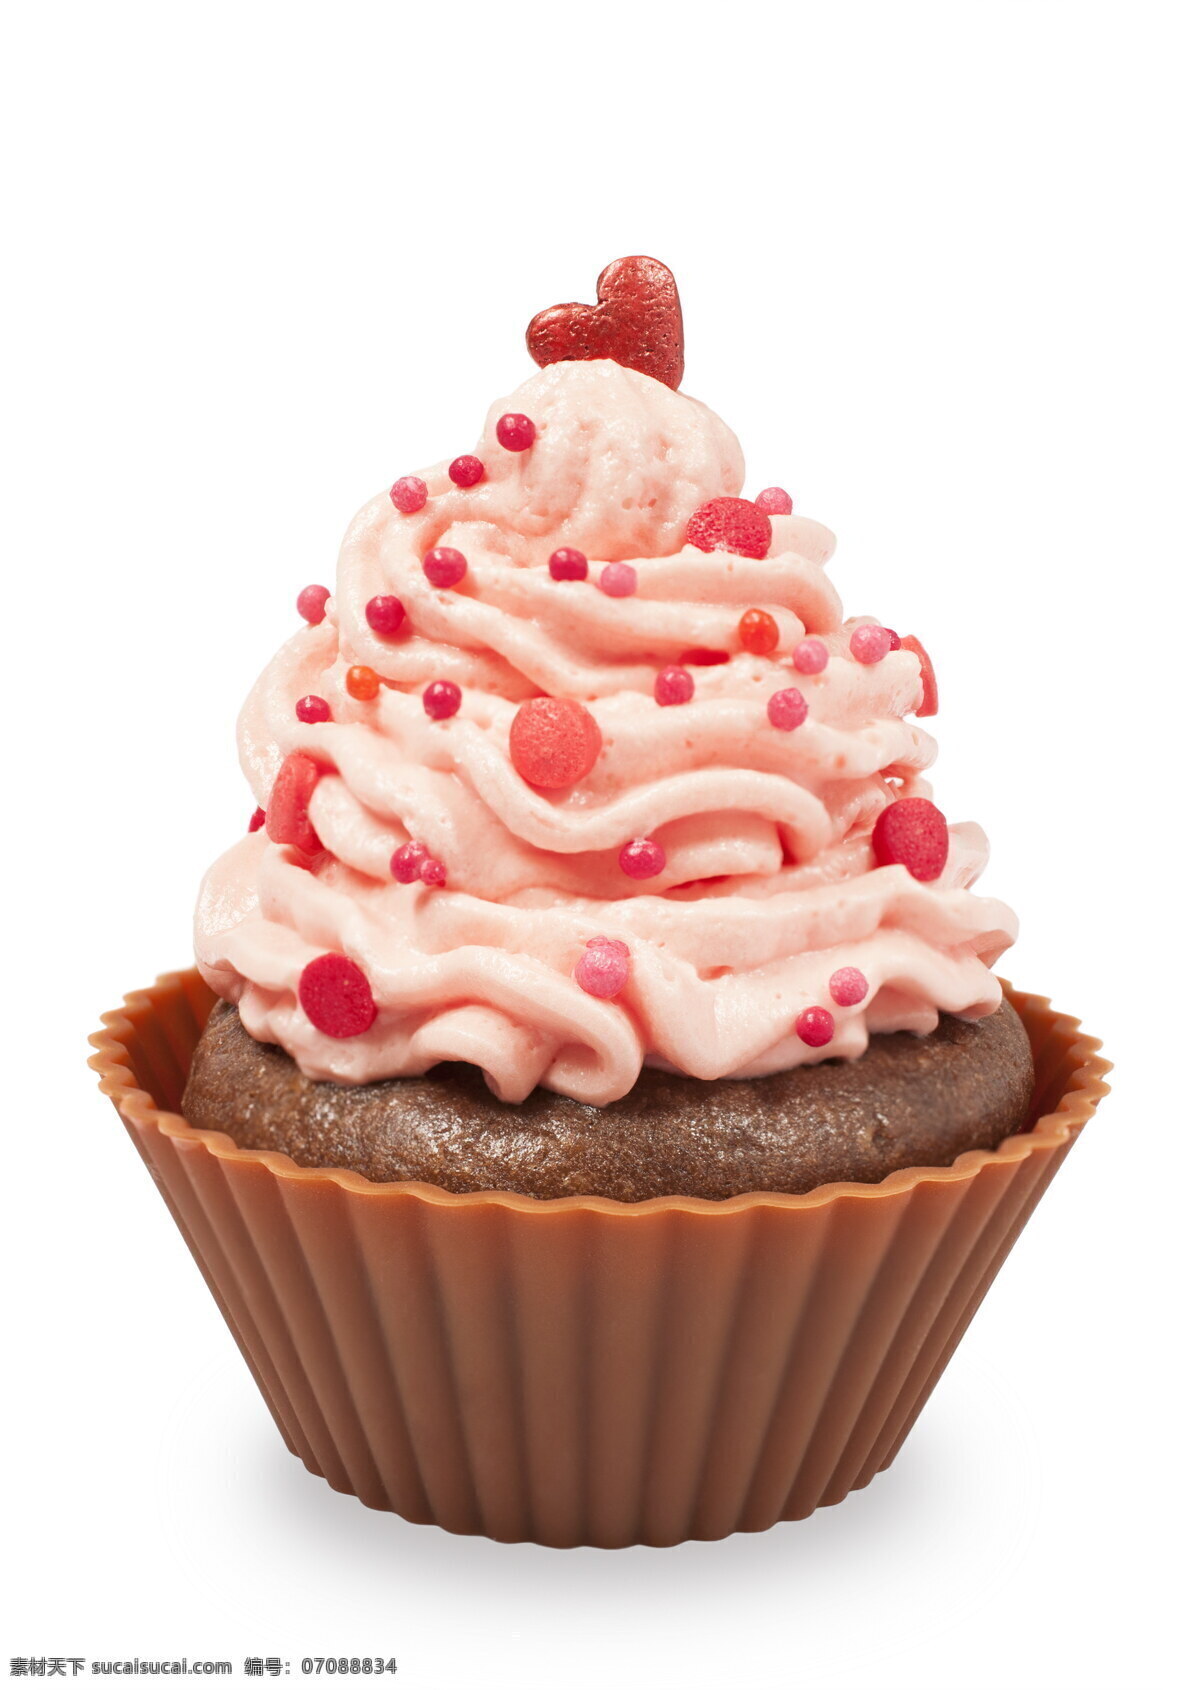 粉红色蛋糕 粉红色 蛋糕 糕点 奶油蛋糕 生日蛋糕 花朵 彩色蛋糕 盘子 蜡烛 其他类别 餐饮美食 白色